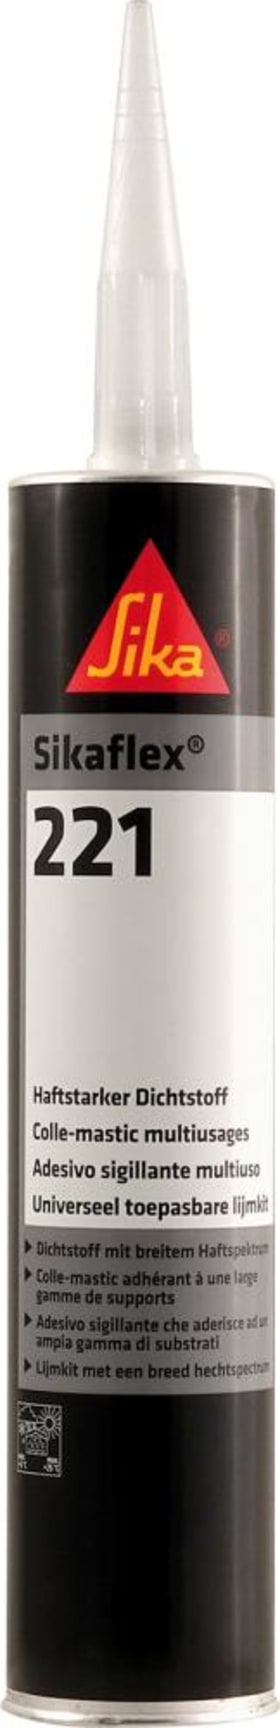 SIKA SIKAFLEX® -221 300ML UNIWEISS (MDI-HALTIG) 15771